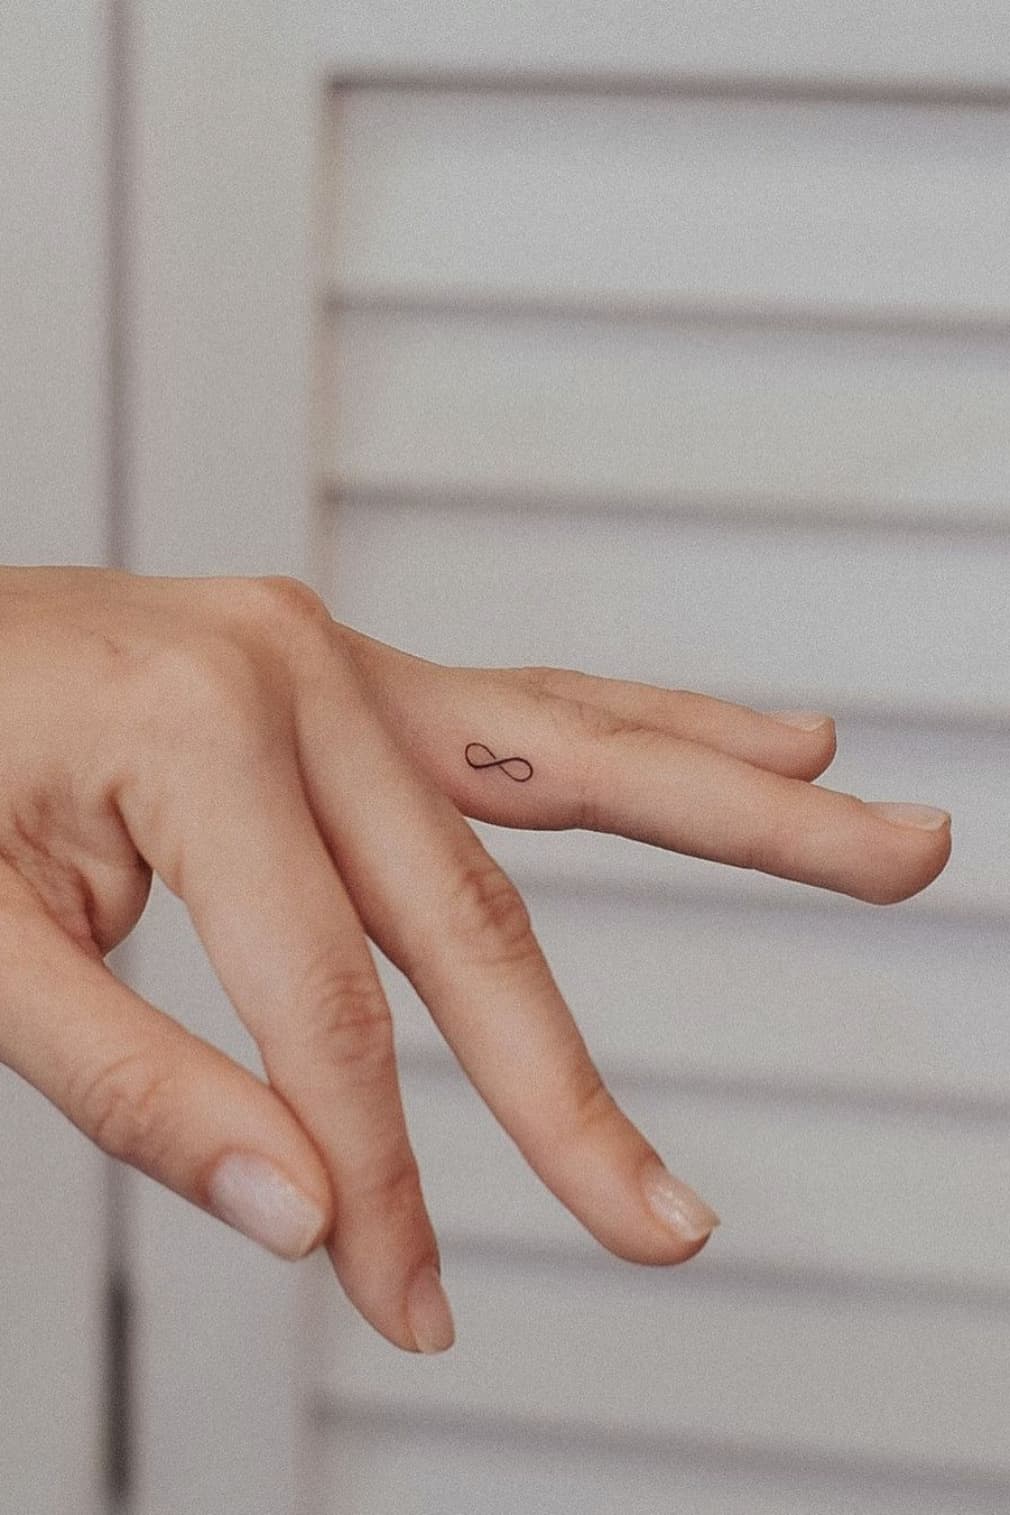 Tiny Infinity Symbol tattoo